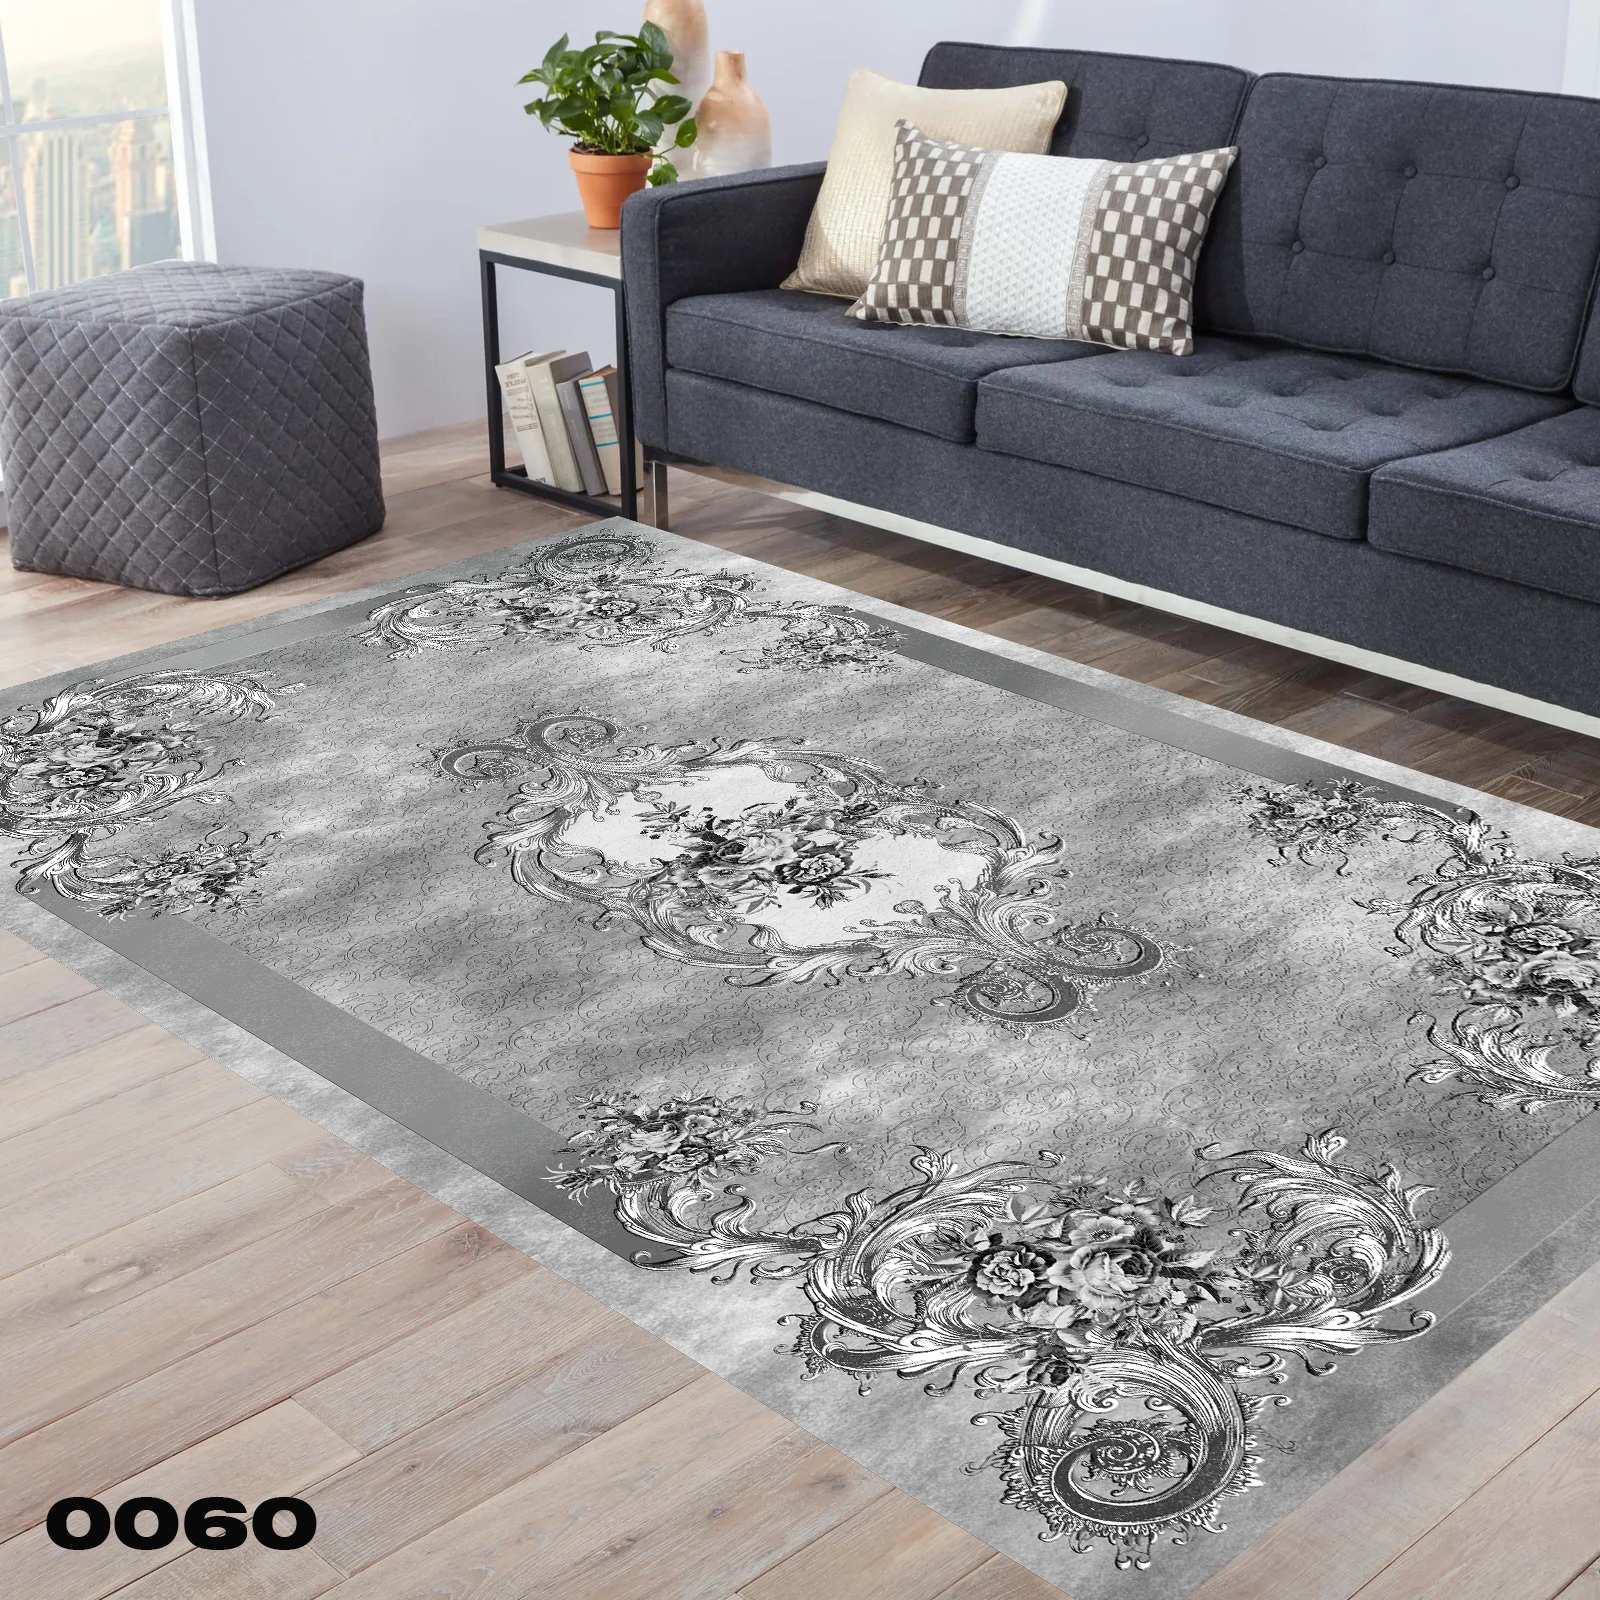 روفرشی طرح فرش طوسی با گل های سنتی کد 0060